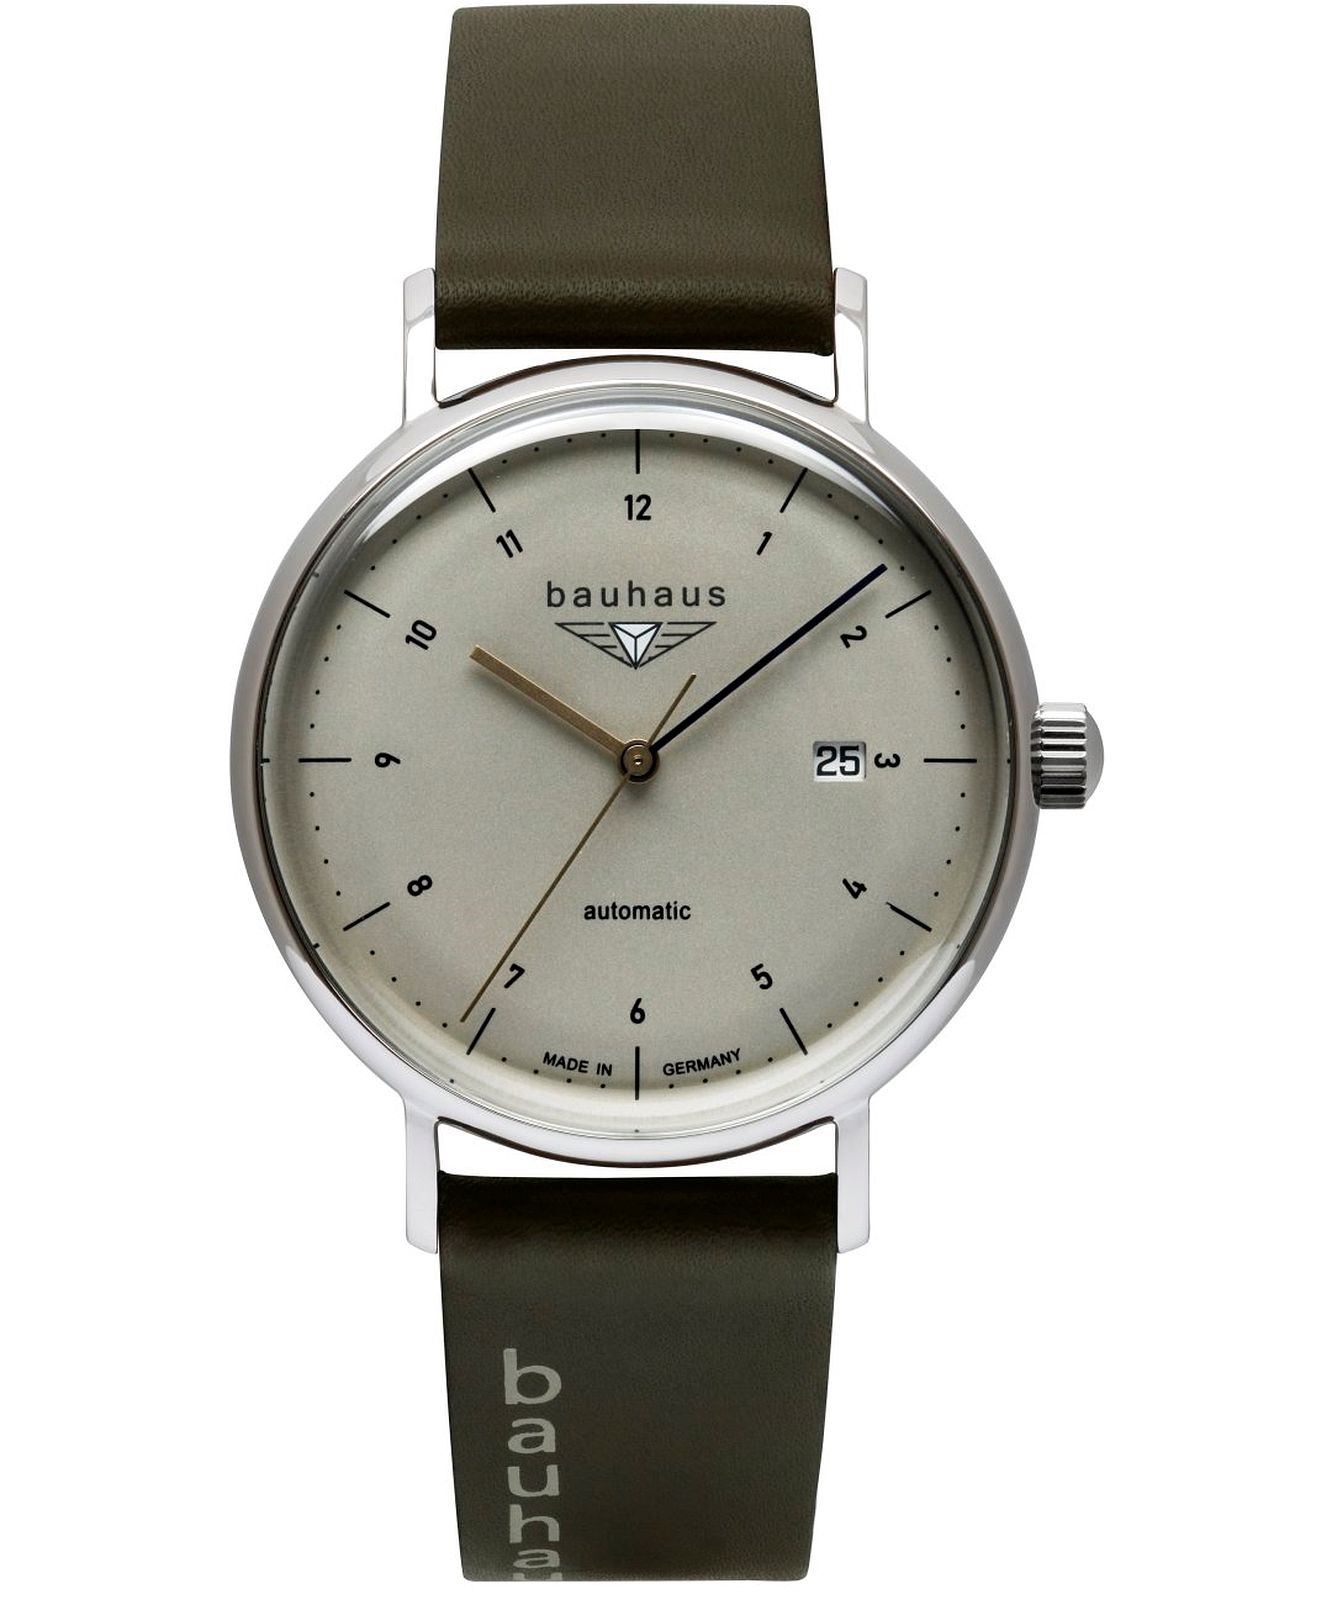 Bauhaus 2152-1 - Automatic • Watch